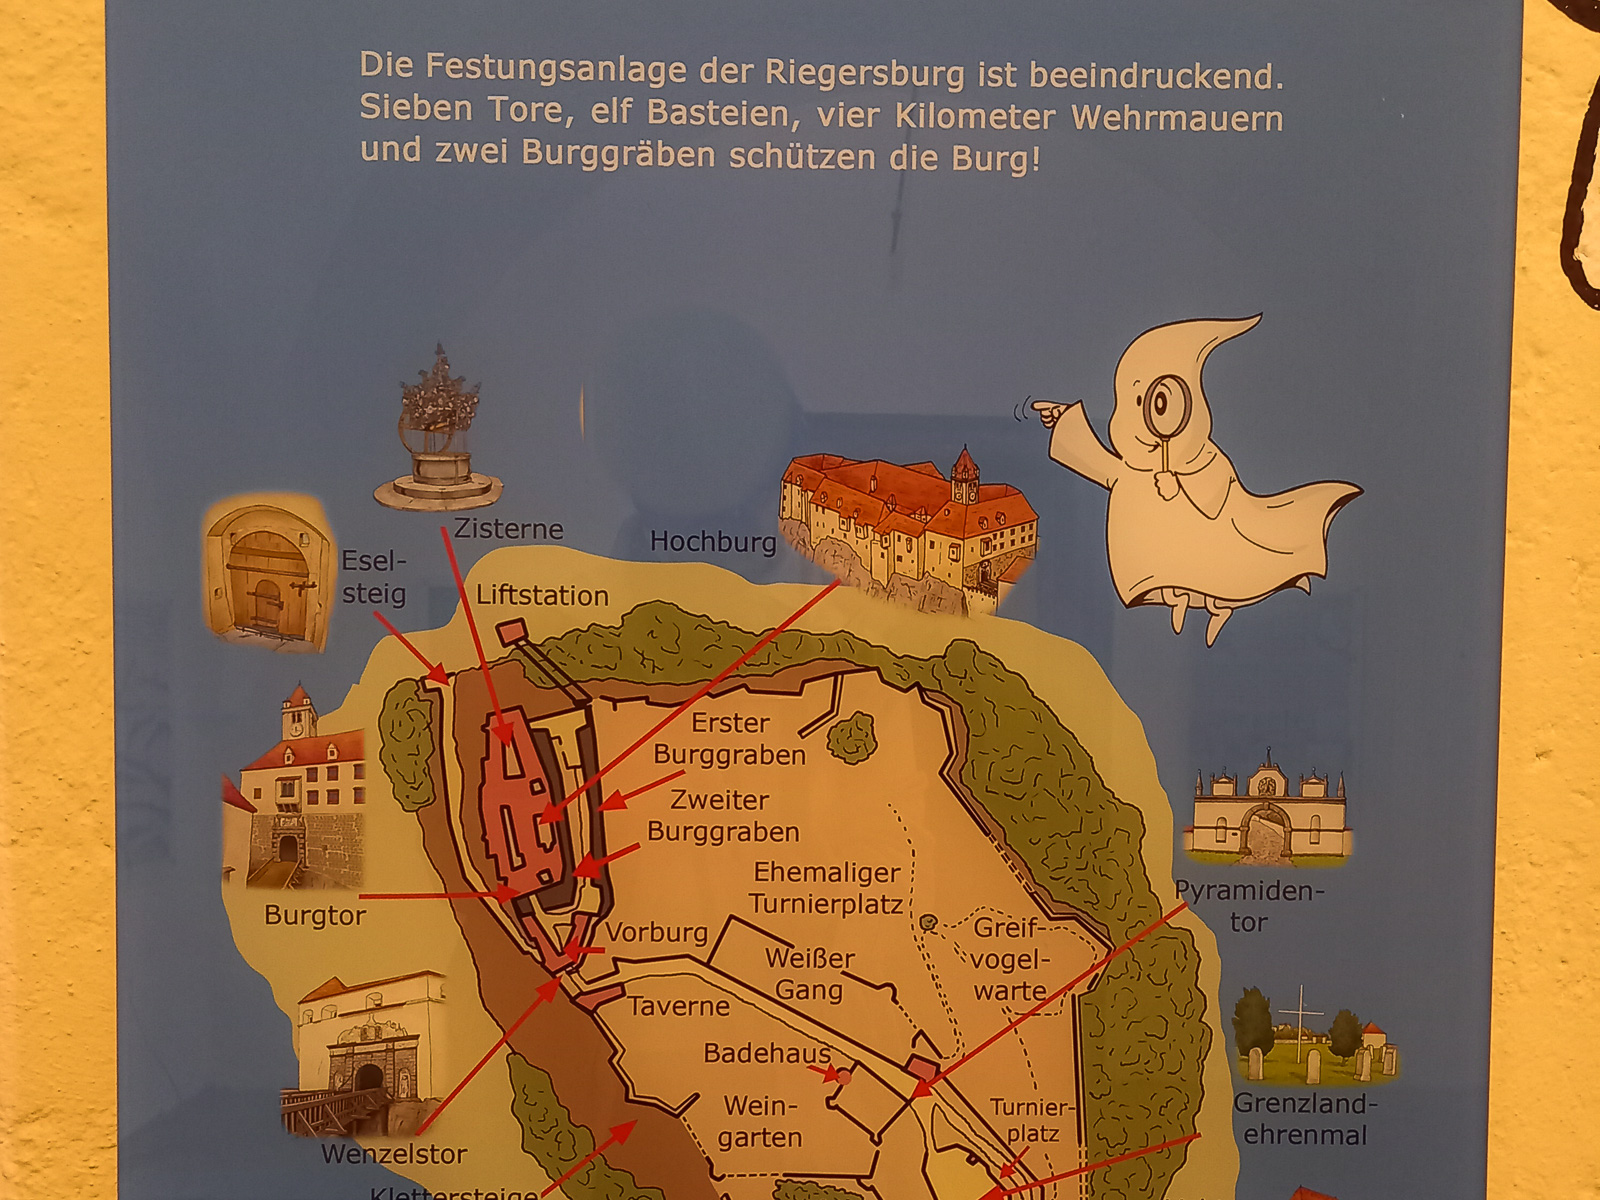 Maskottchen Rüdiger erklärt die Riegersburg